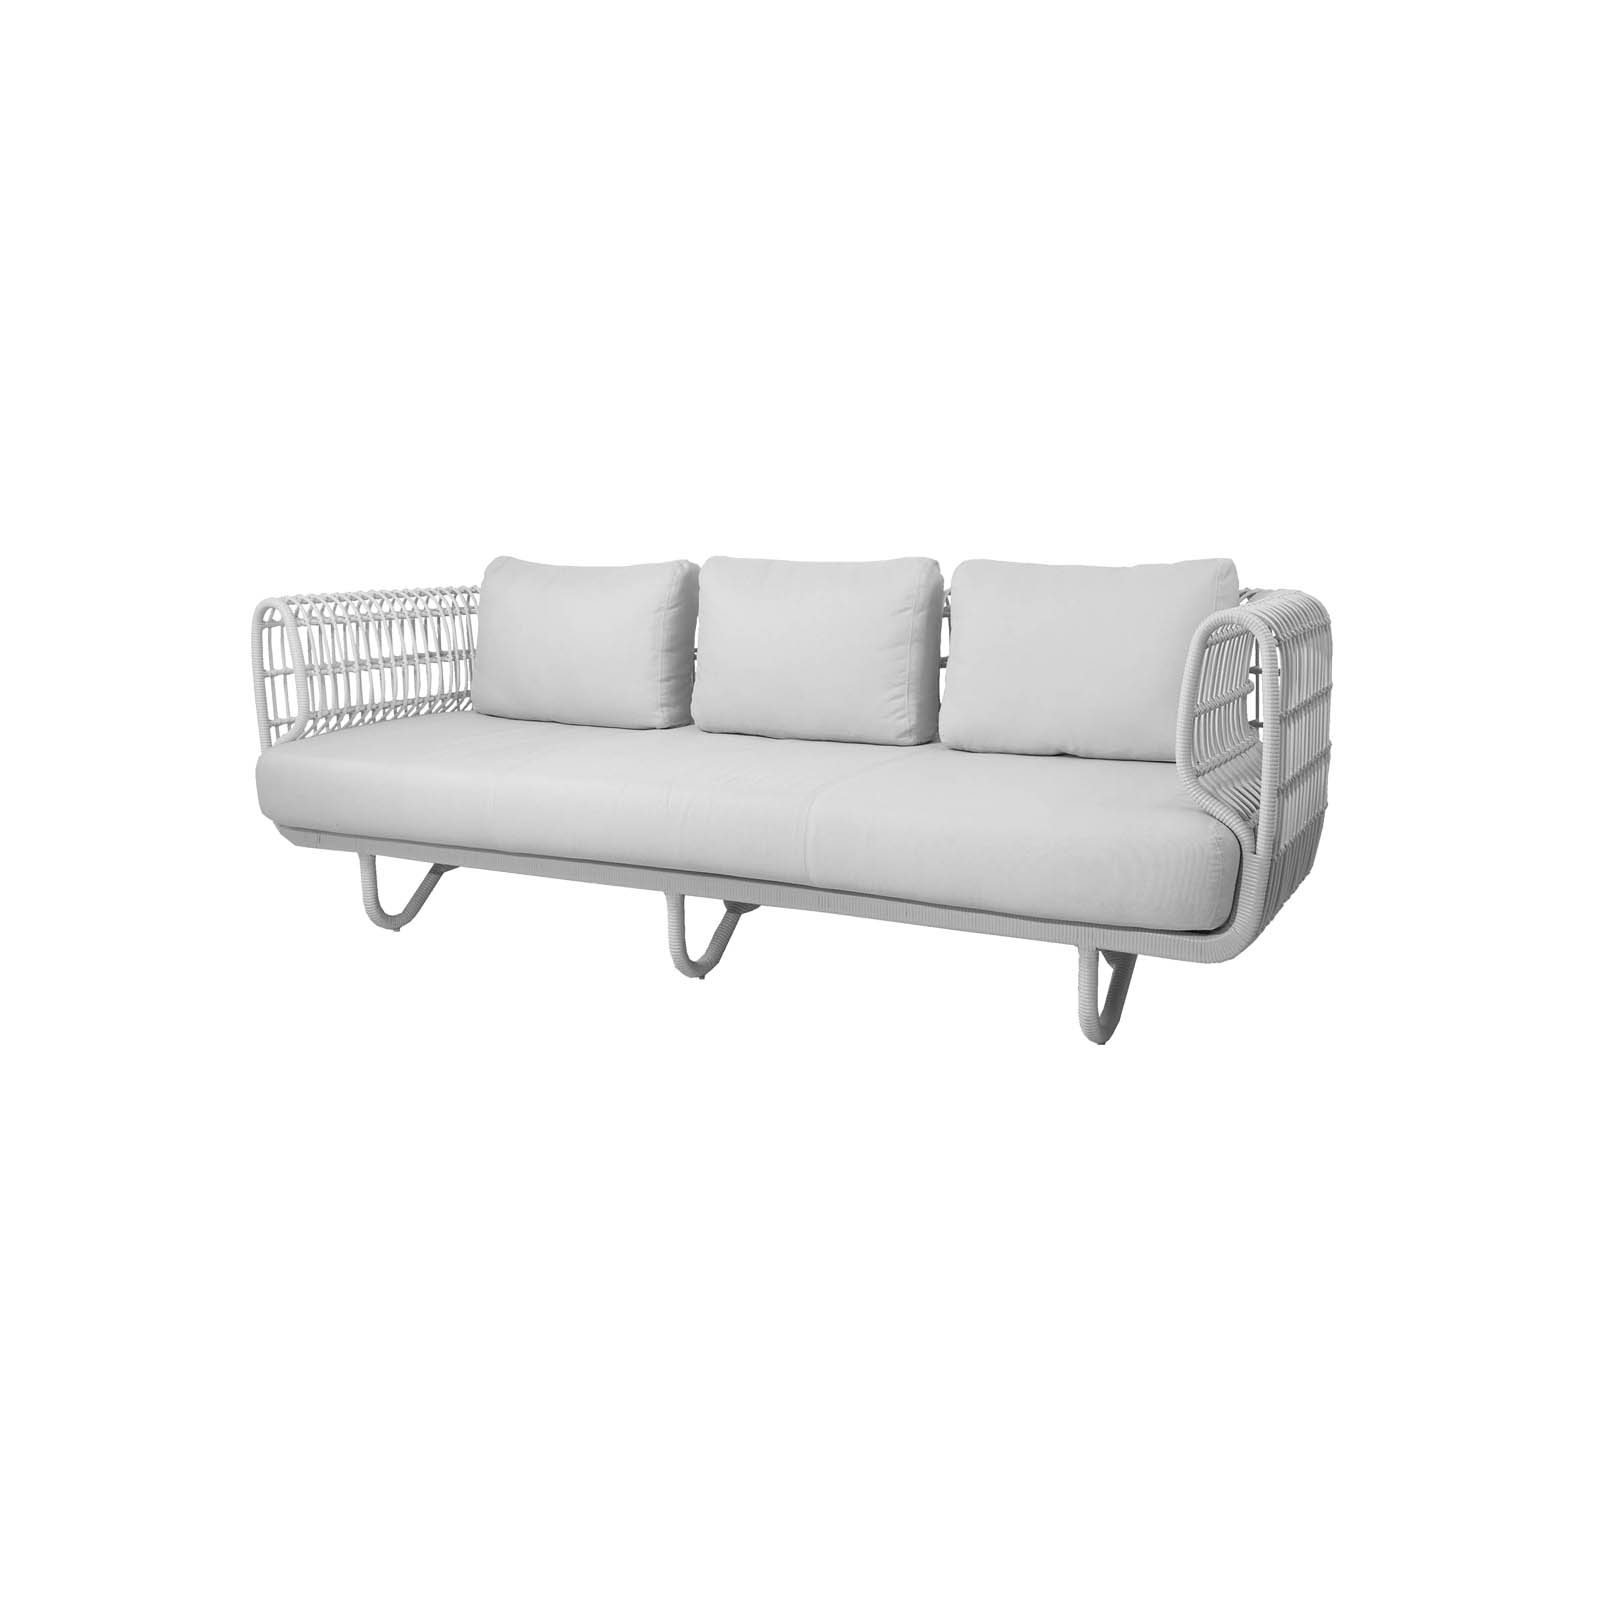 Nest 3-Sitzer Sofa aus Cane-line Weave in White mit Kissen aus Cane-line Natté in White